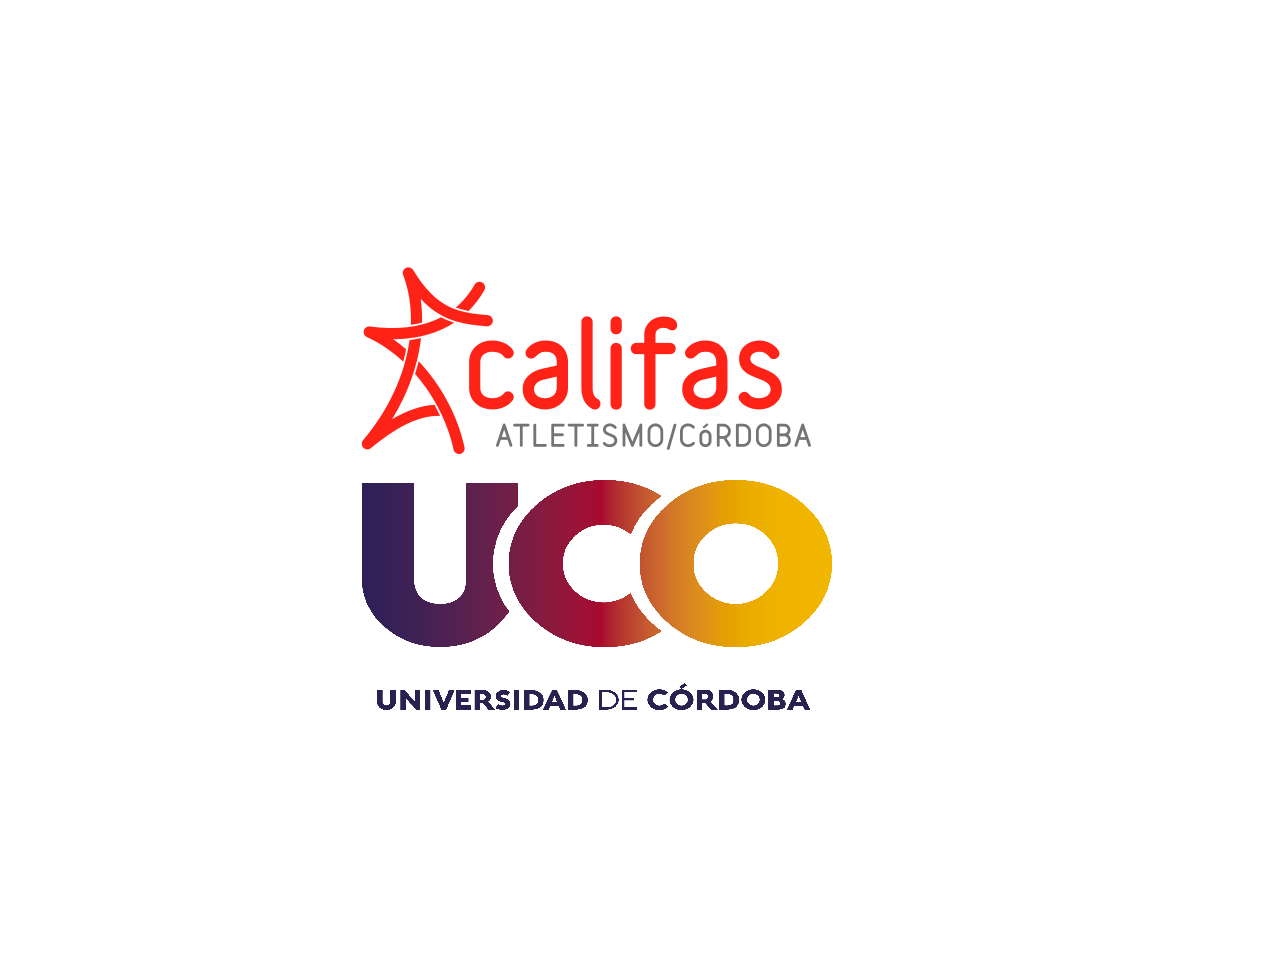 Club de atletismo Los Califas Logo